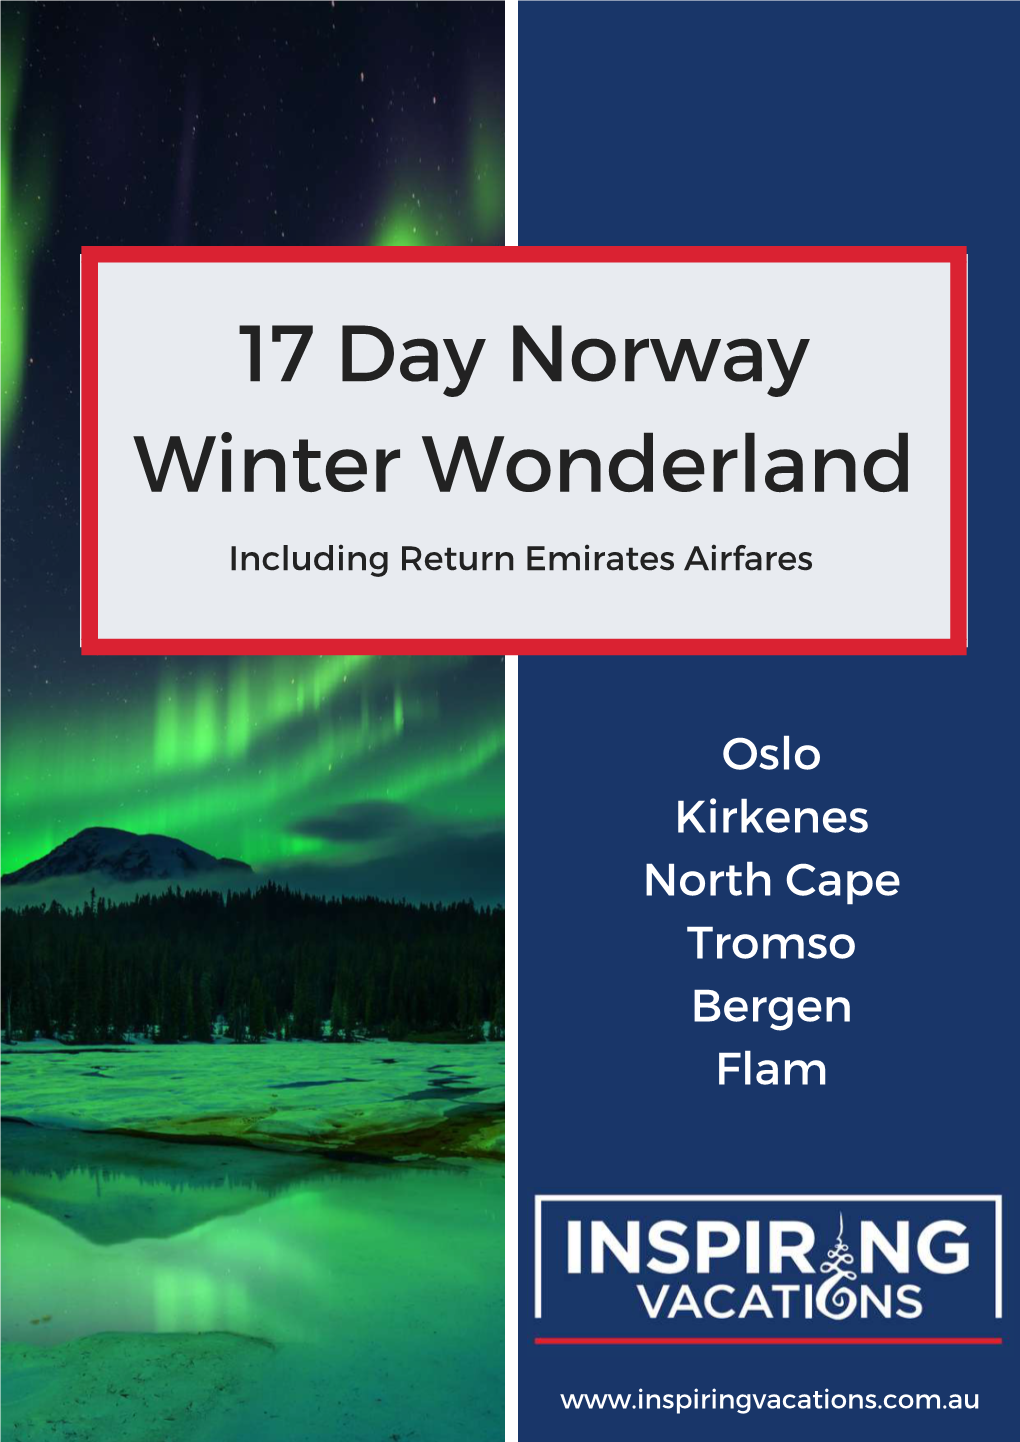 17 Day Norway Winter Wonderland